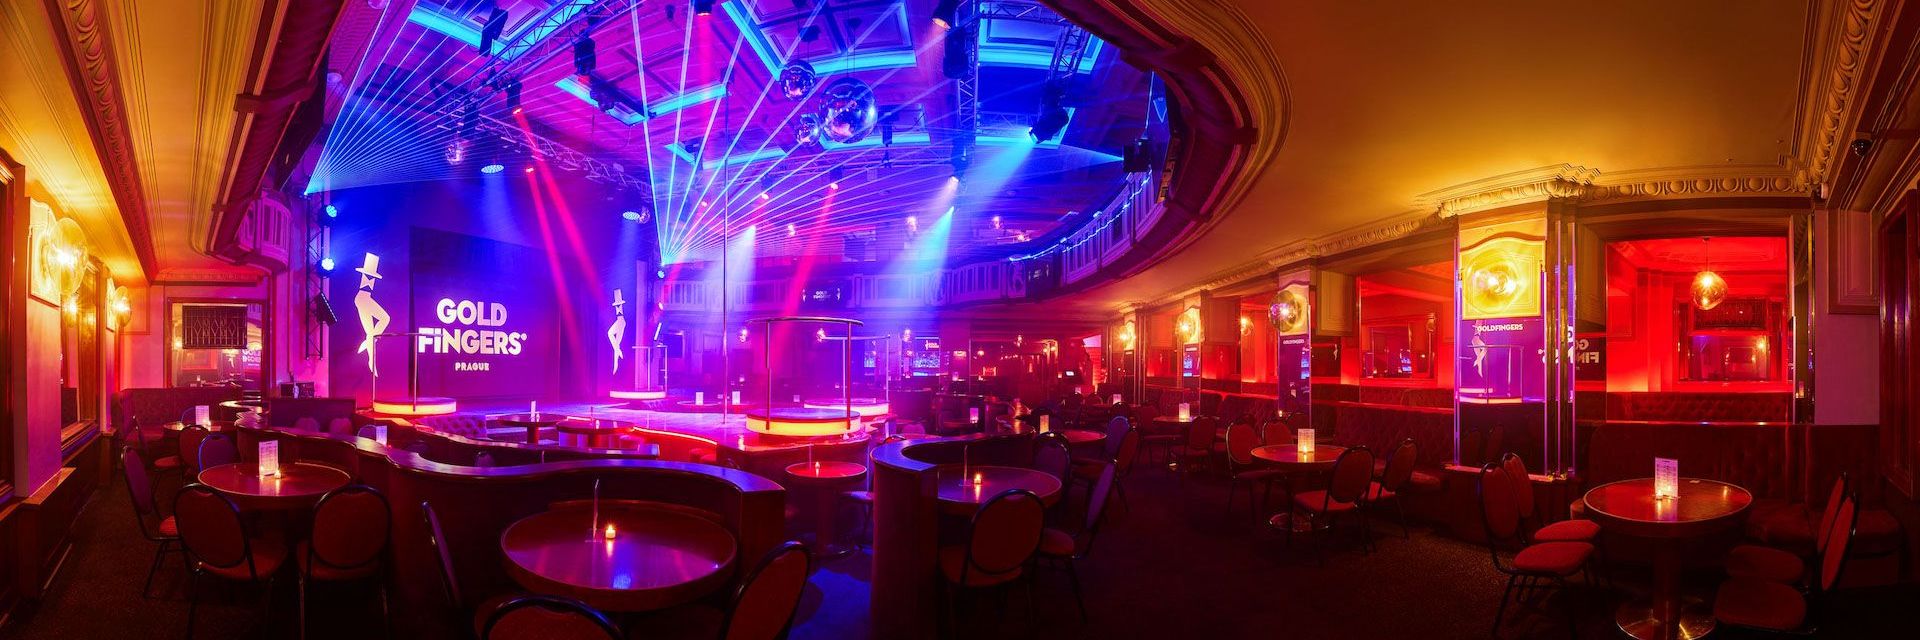 The best strip club in Prague interior